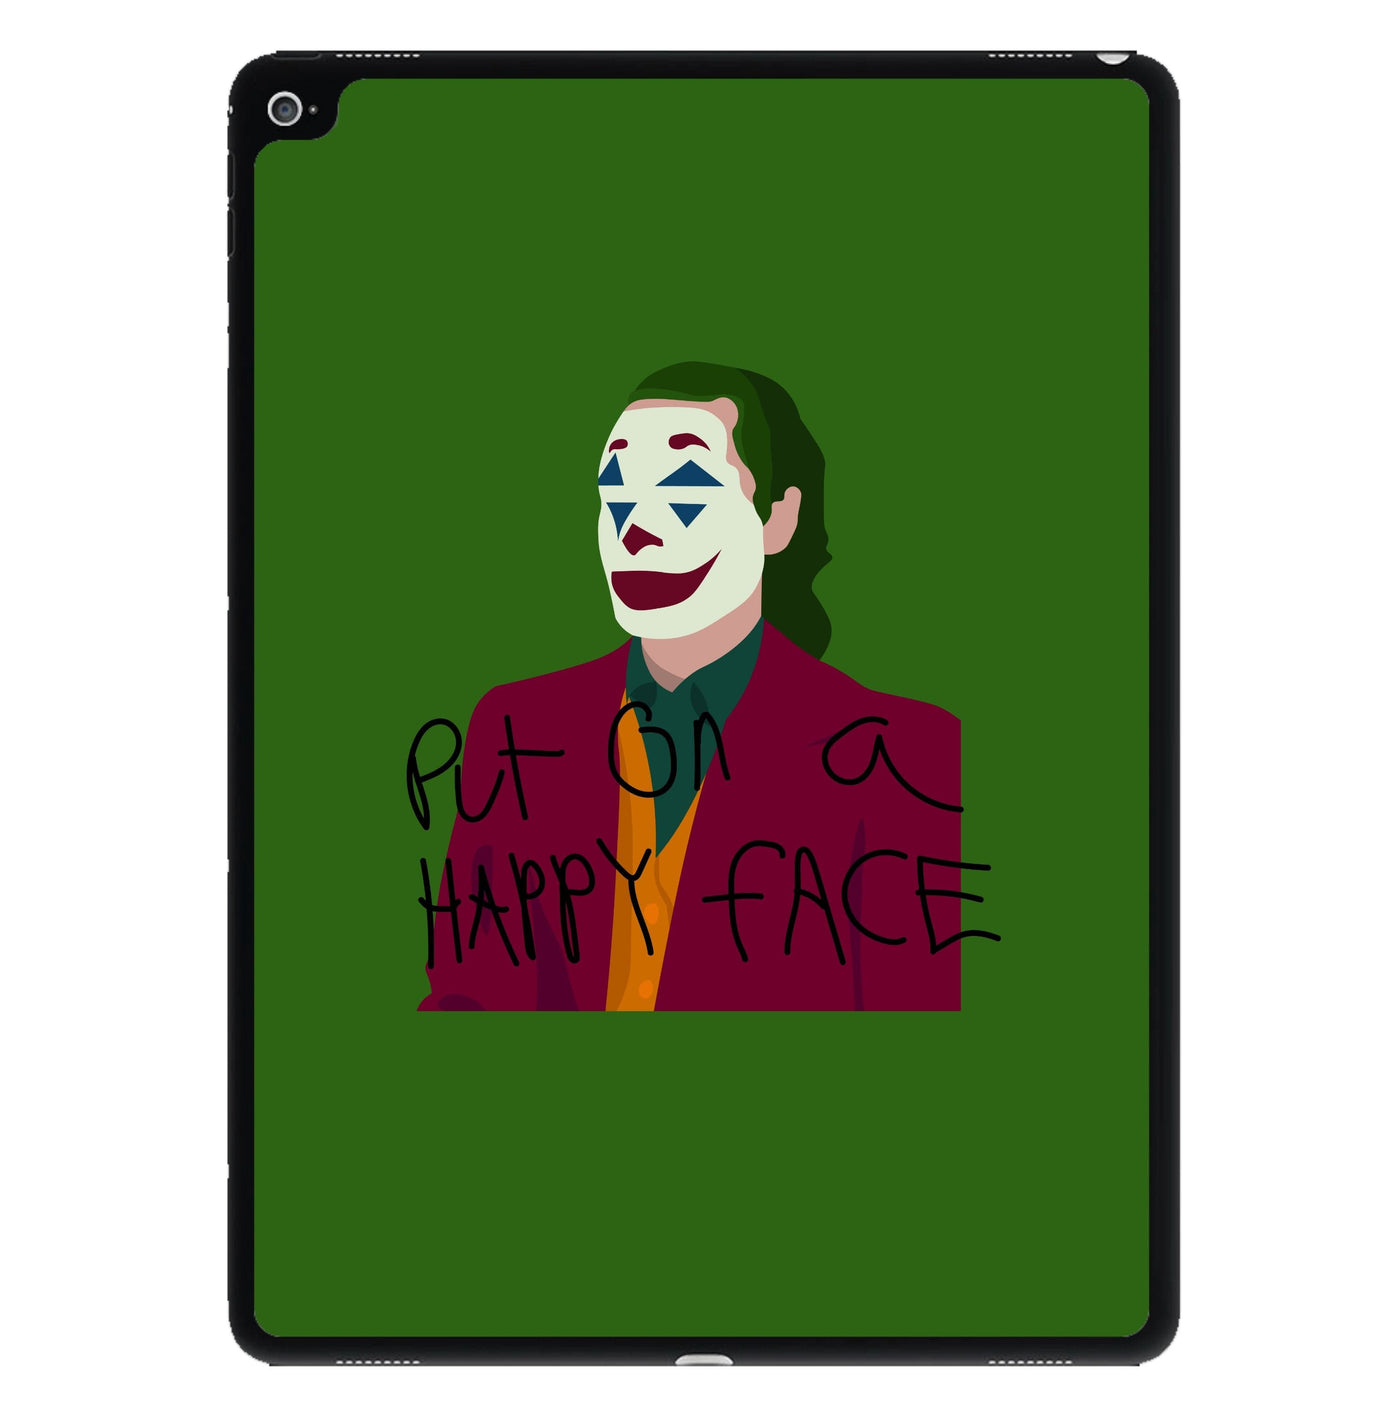 Put on a happy face - Joker iPad Case